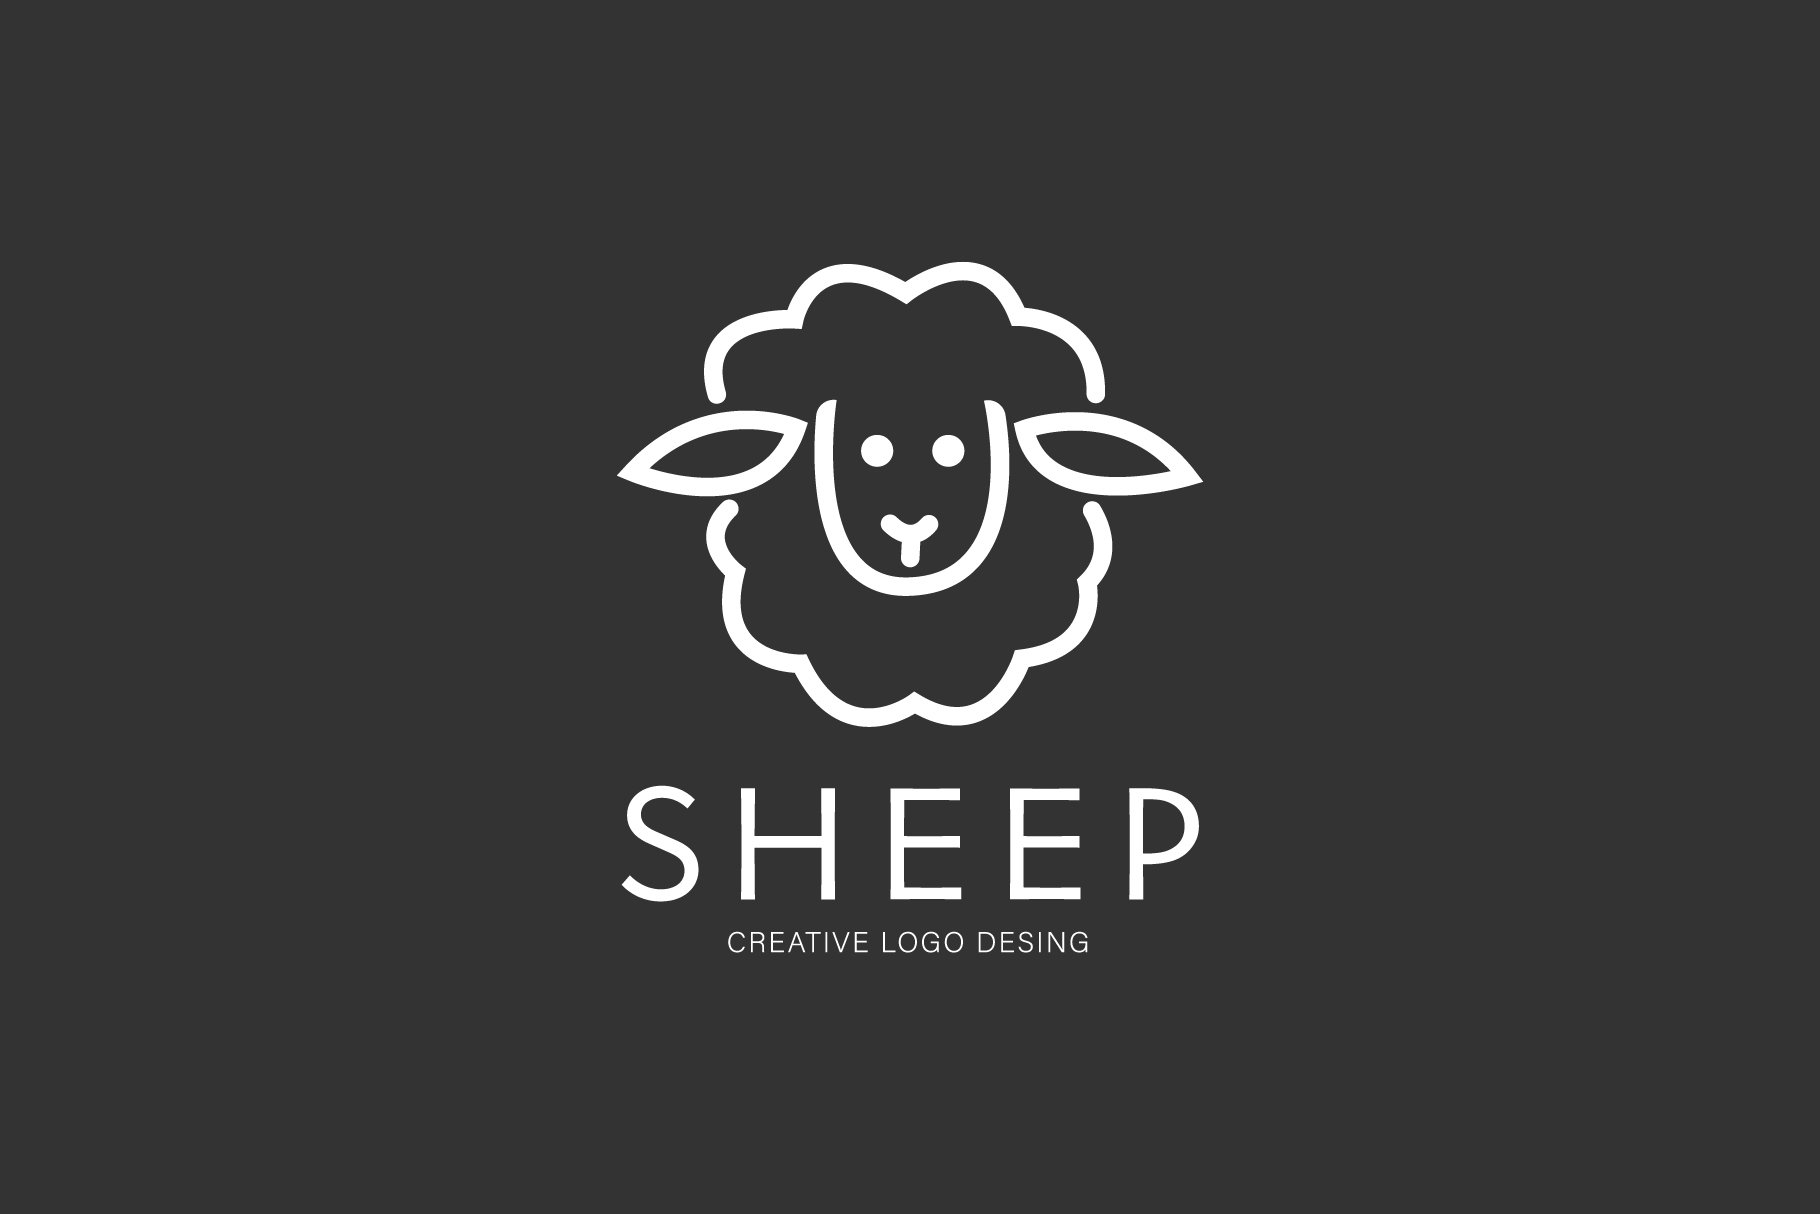 sheeplogos black1 625